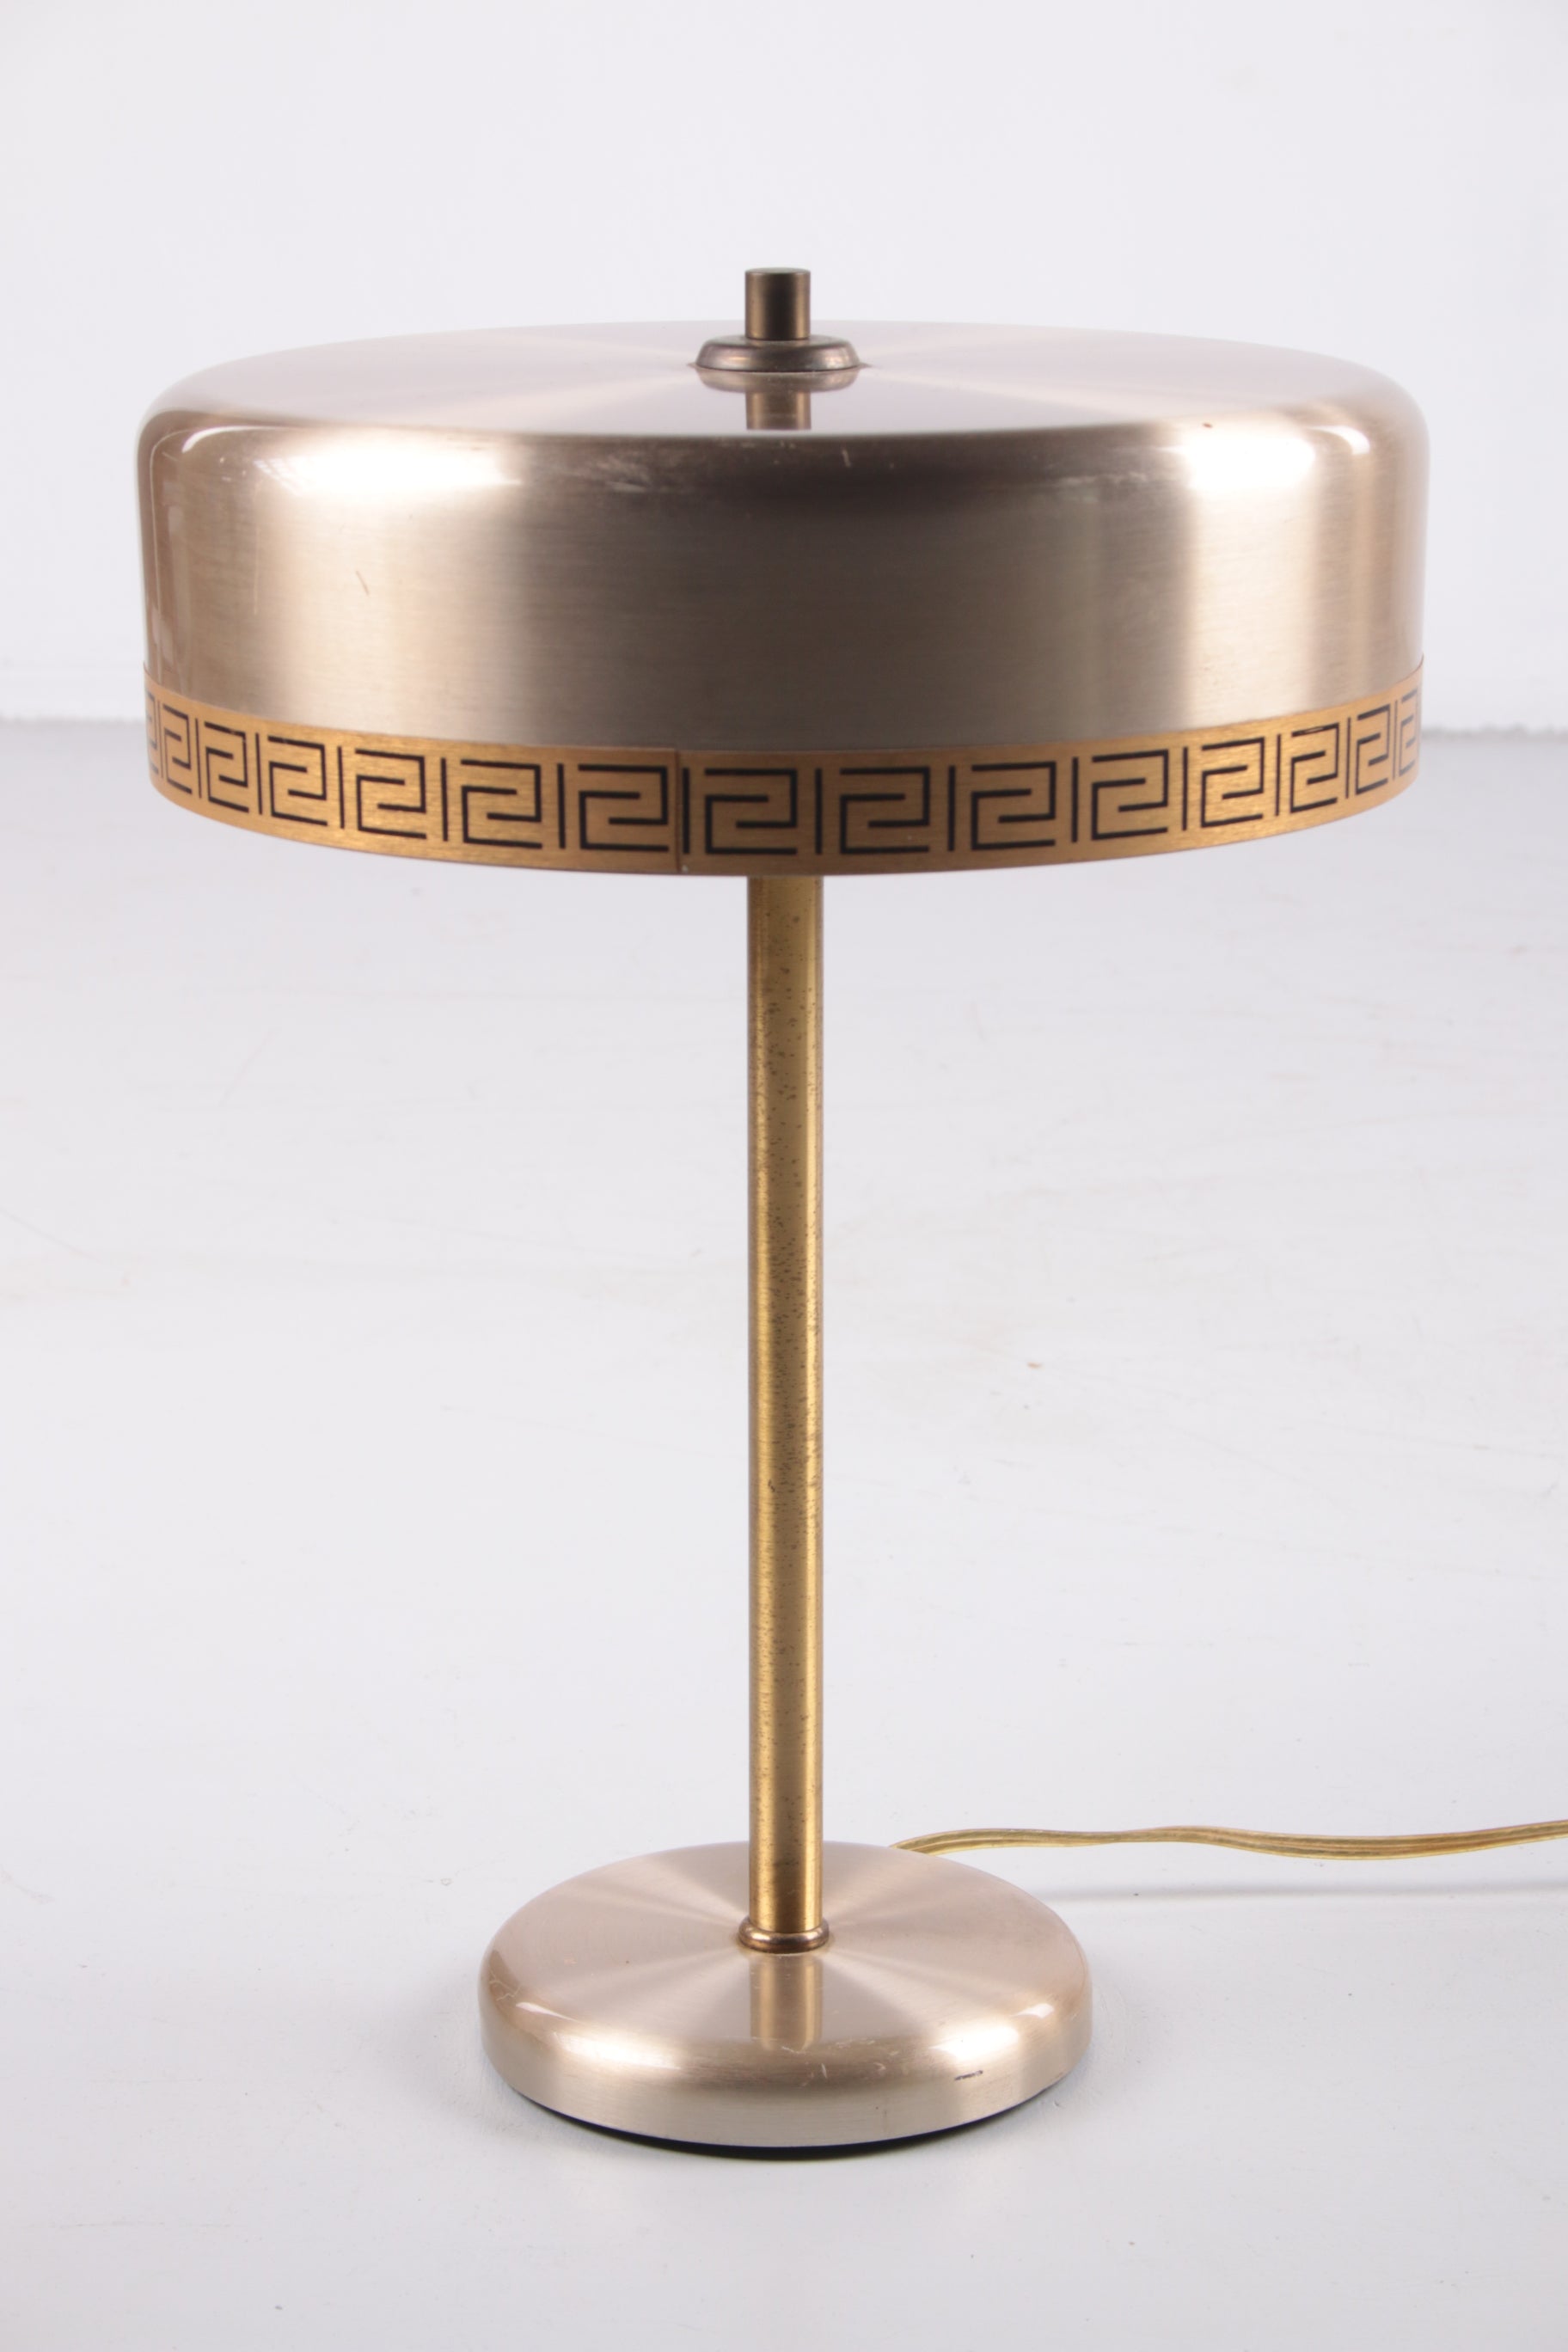 Deense modernistische Model Chief tafellamp van Vitrika, jaren 60 voorkant licht uit